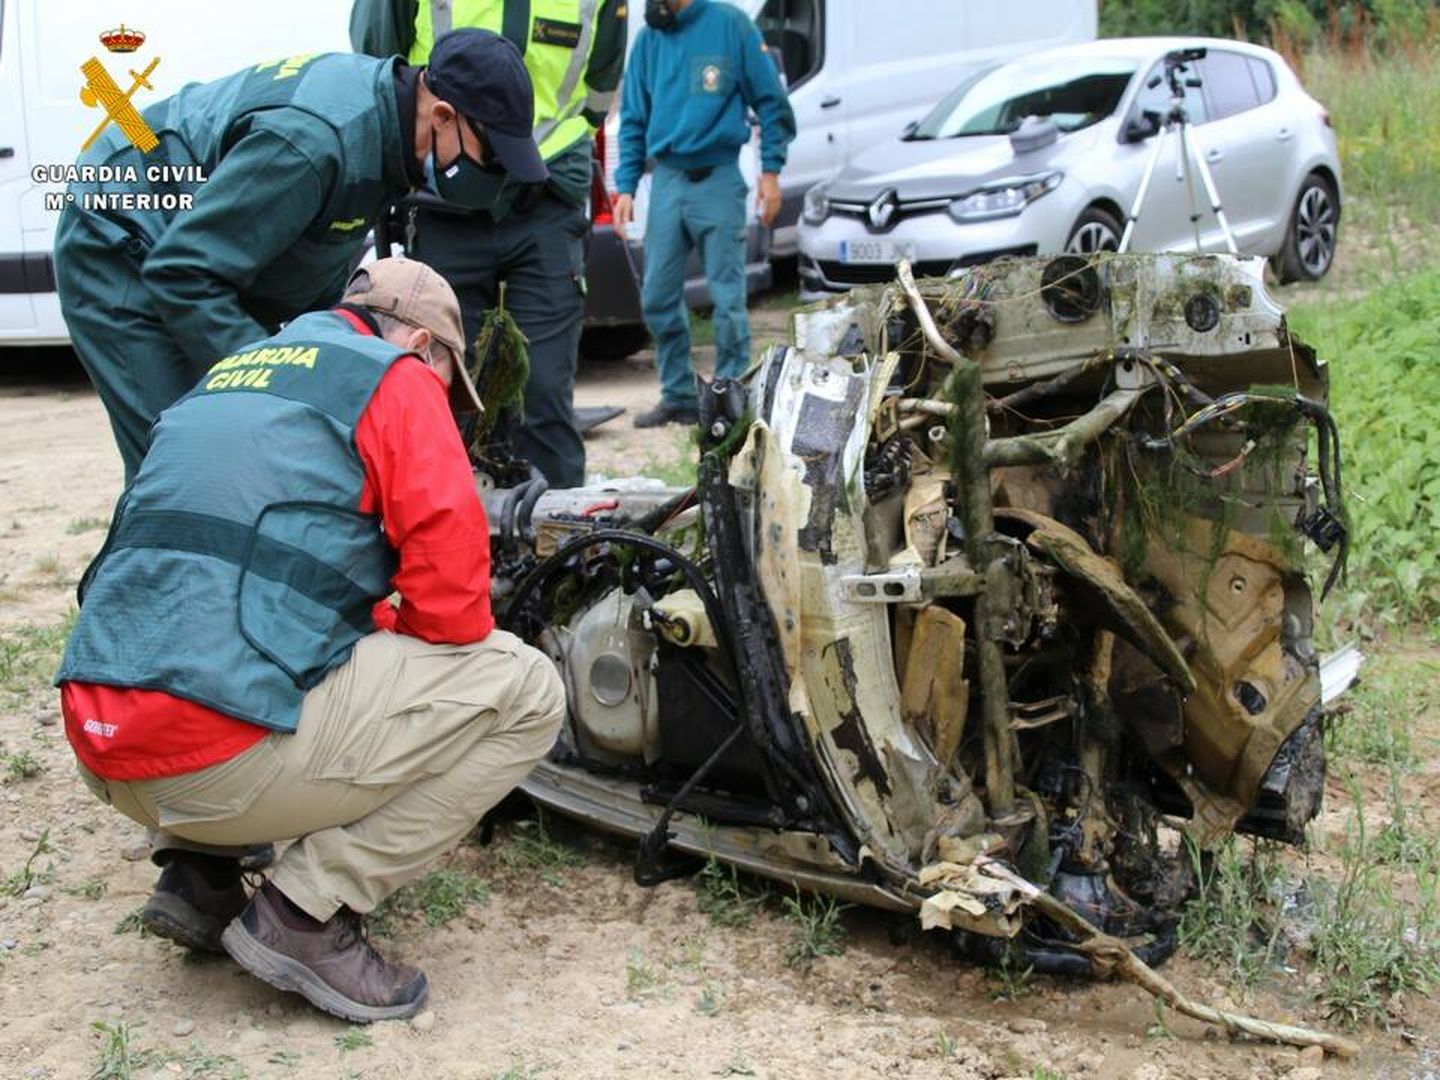 El coche con el que lo atropellaron fue despedazado para ocultar pruebas. Foto: Guardia Civil